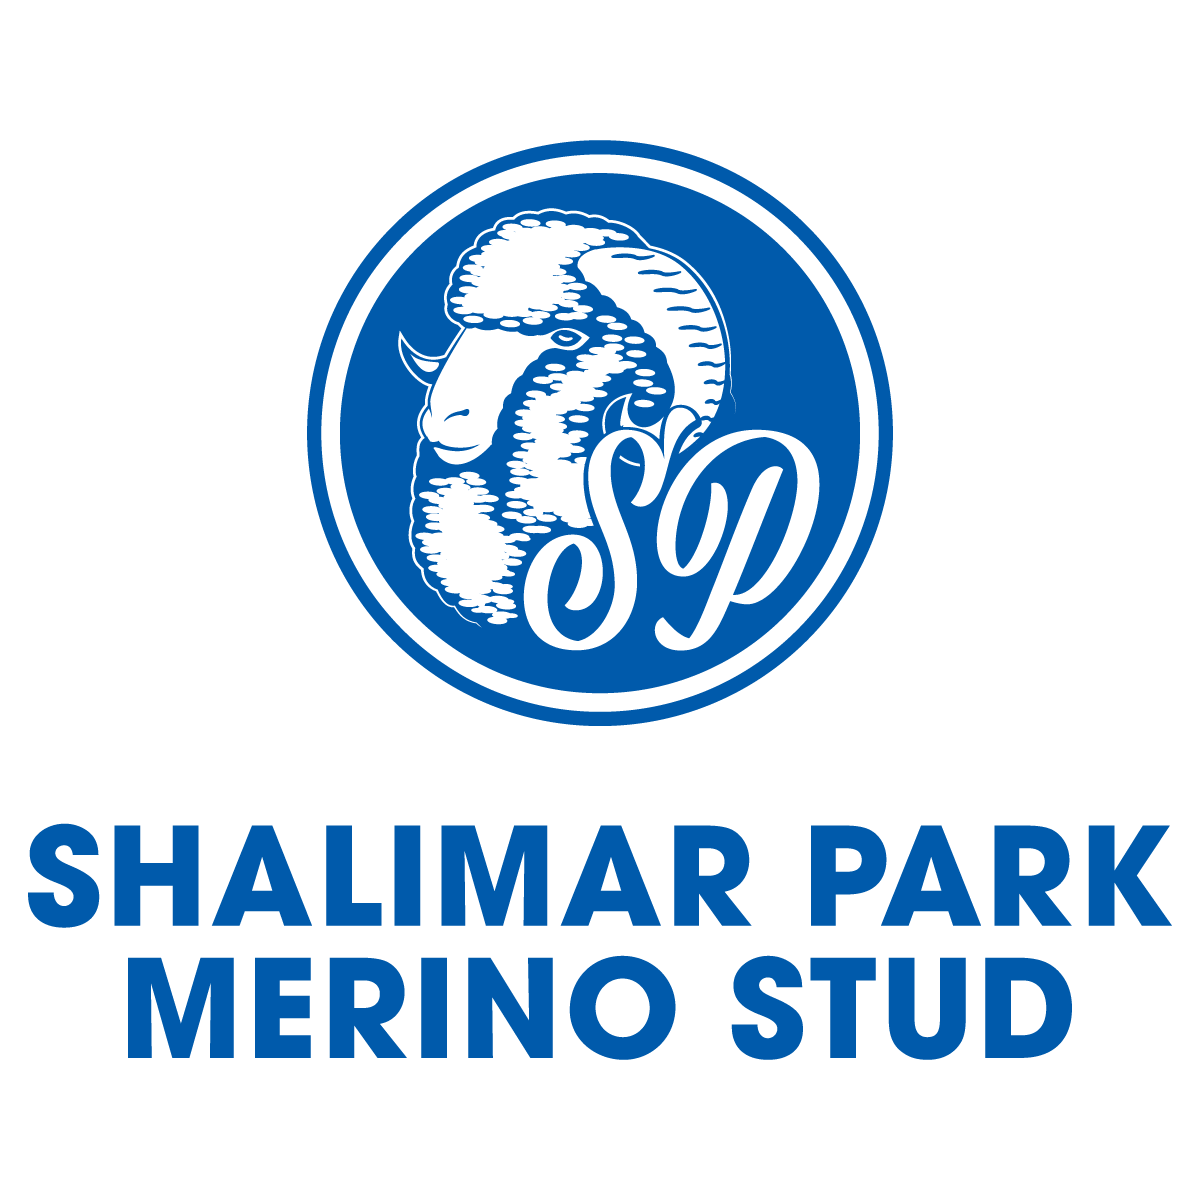 Shalimar Park Merino Stud